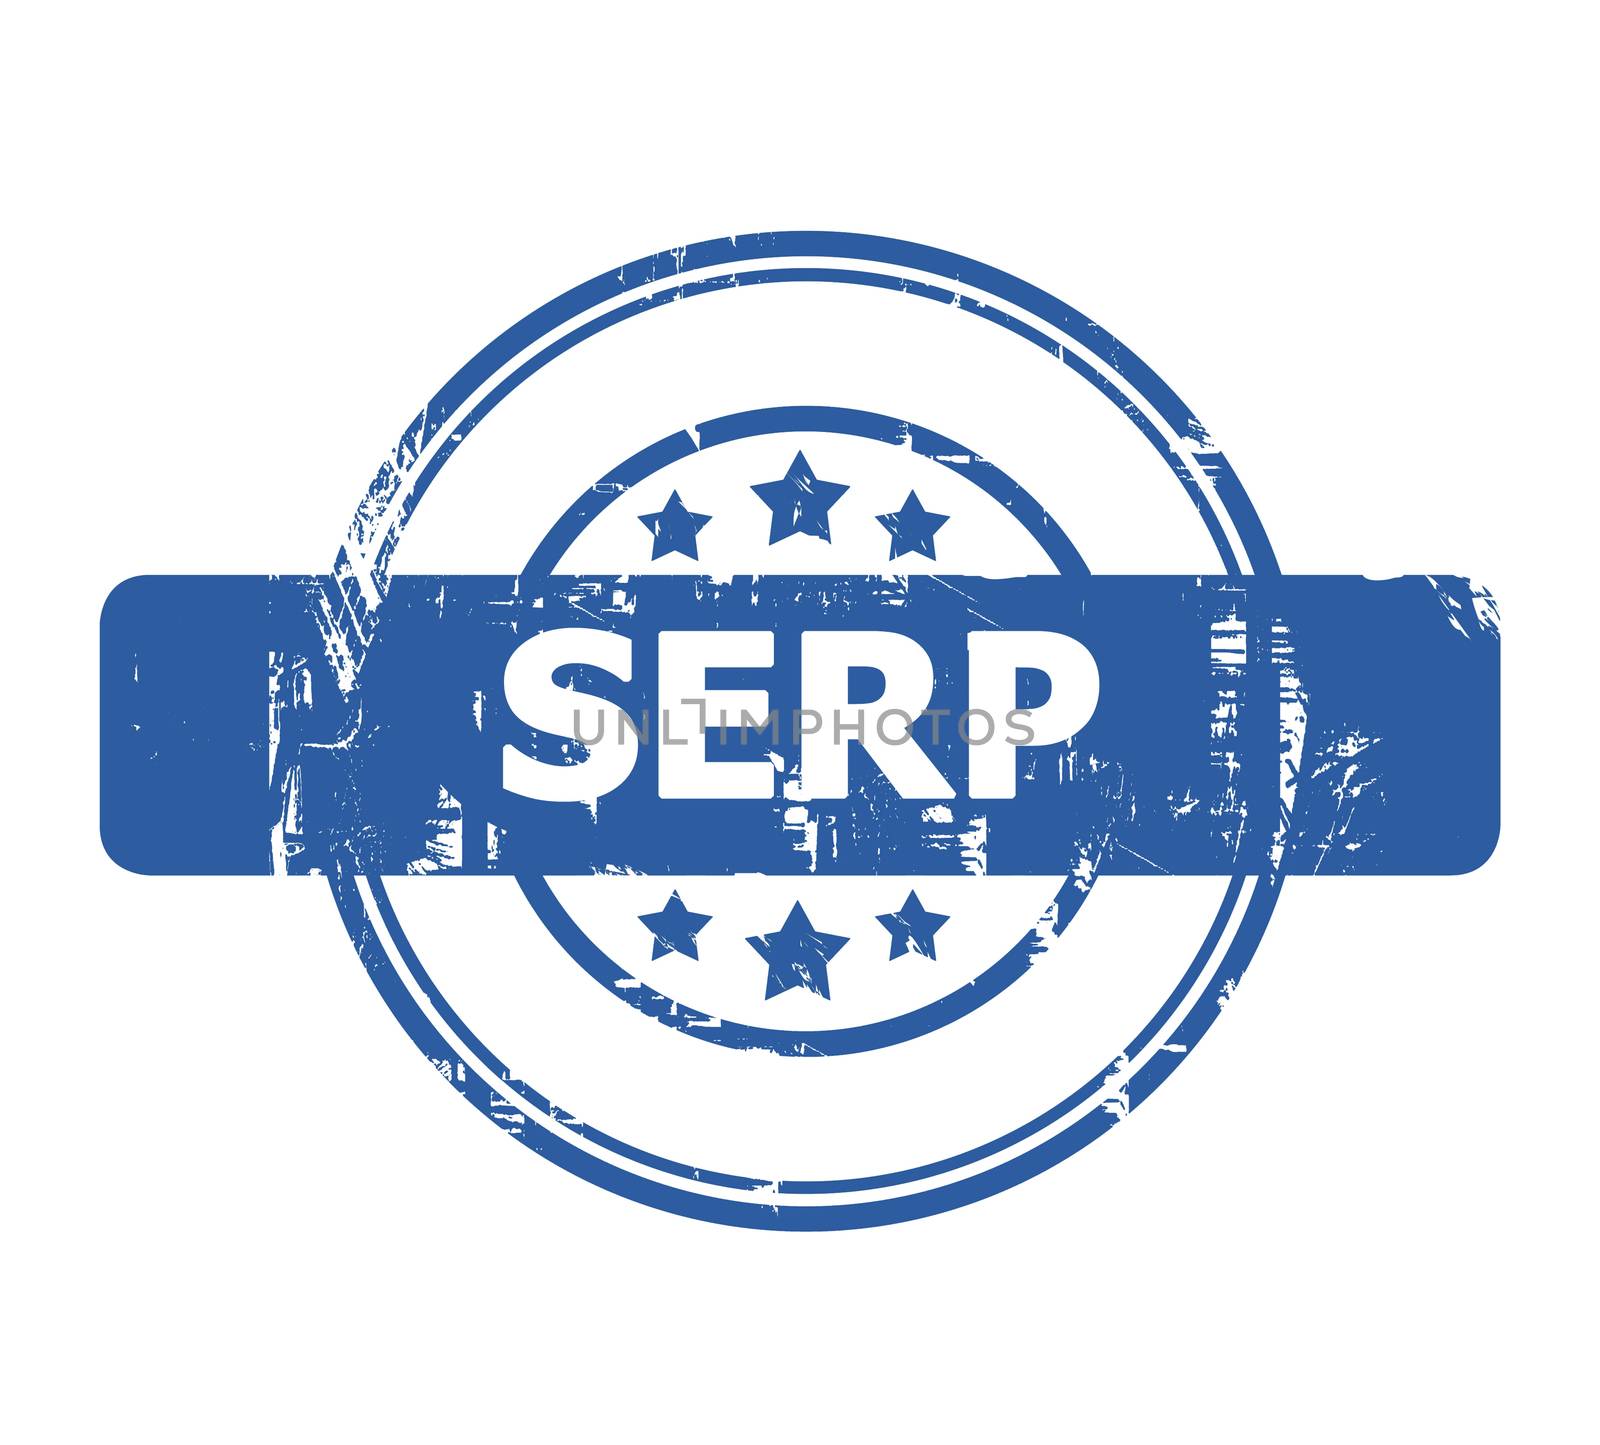 SERP Stamp by speedfighter